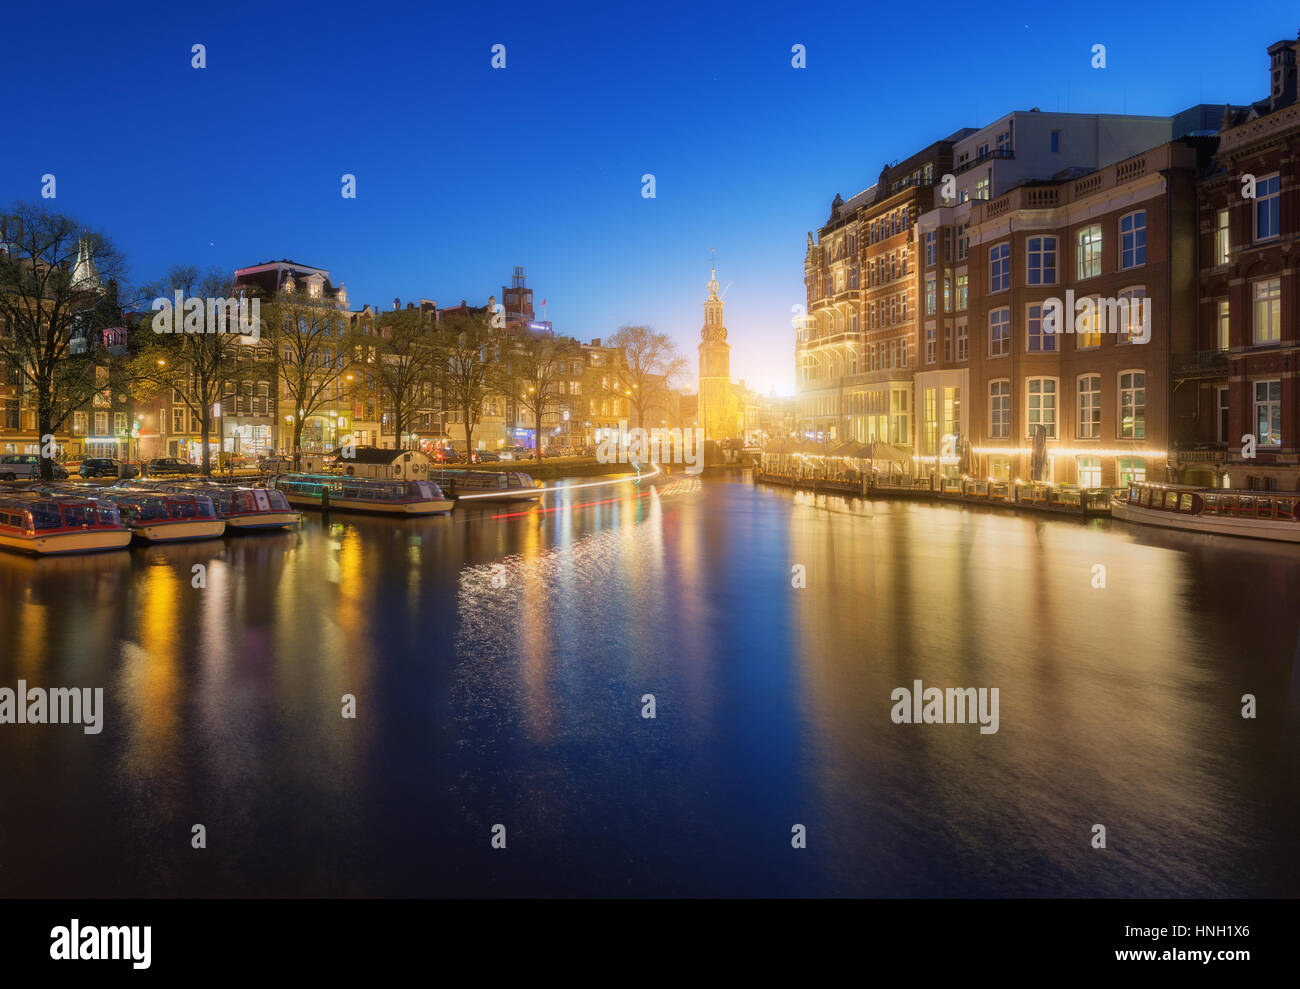 Colorato paesaggio al tramonto in Amsterdam, Paesi Bassi. Riflette le luci della città in acqua con il blu del cielo al crepuscolo. Illuminazione notturna degli edifici Foto Stock